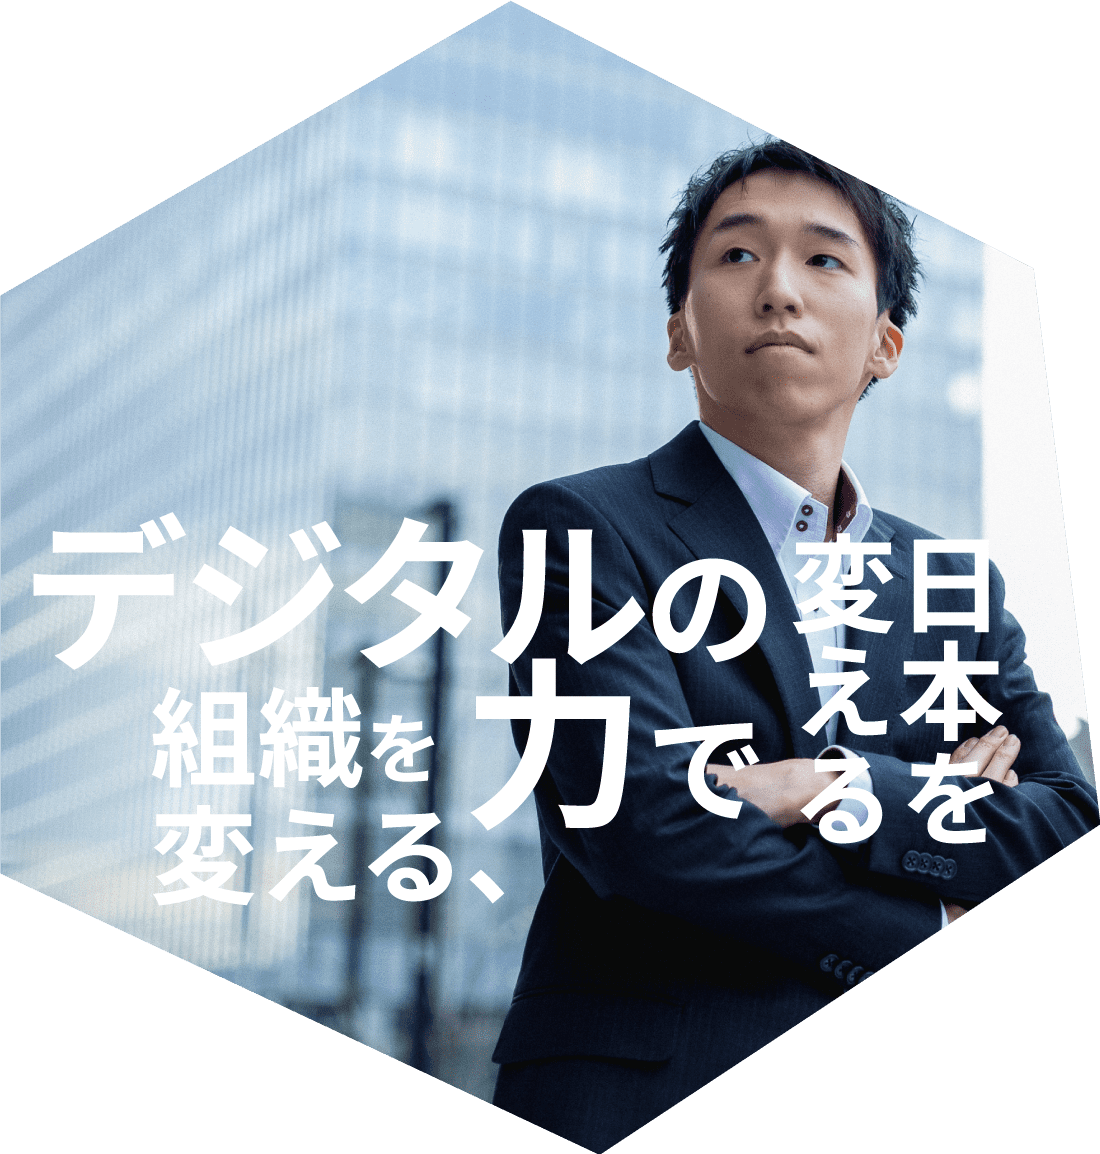 デジタルの力で組織を変える、日本を変える